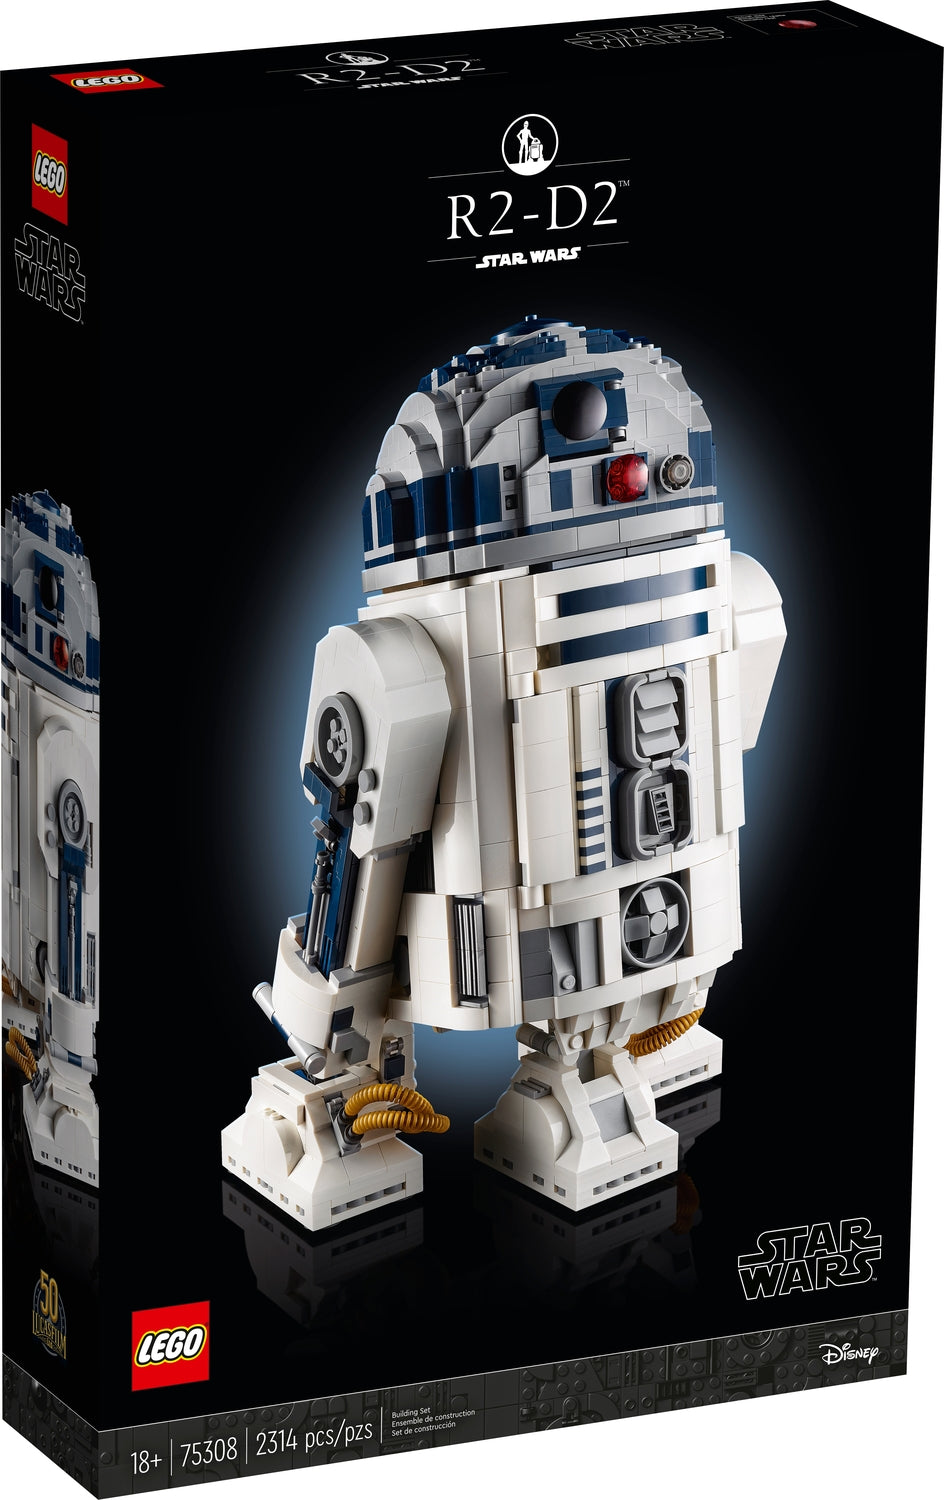 Star Wars R2-d2